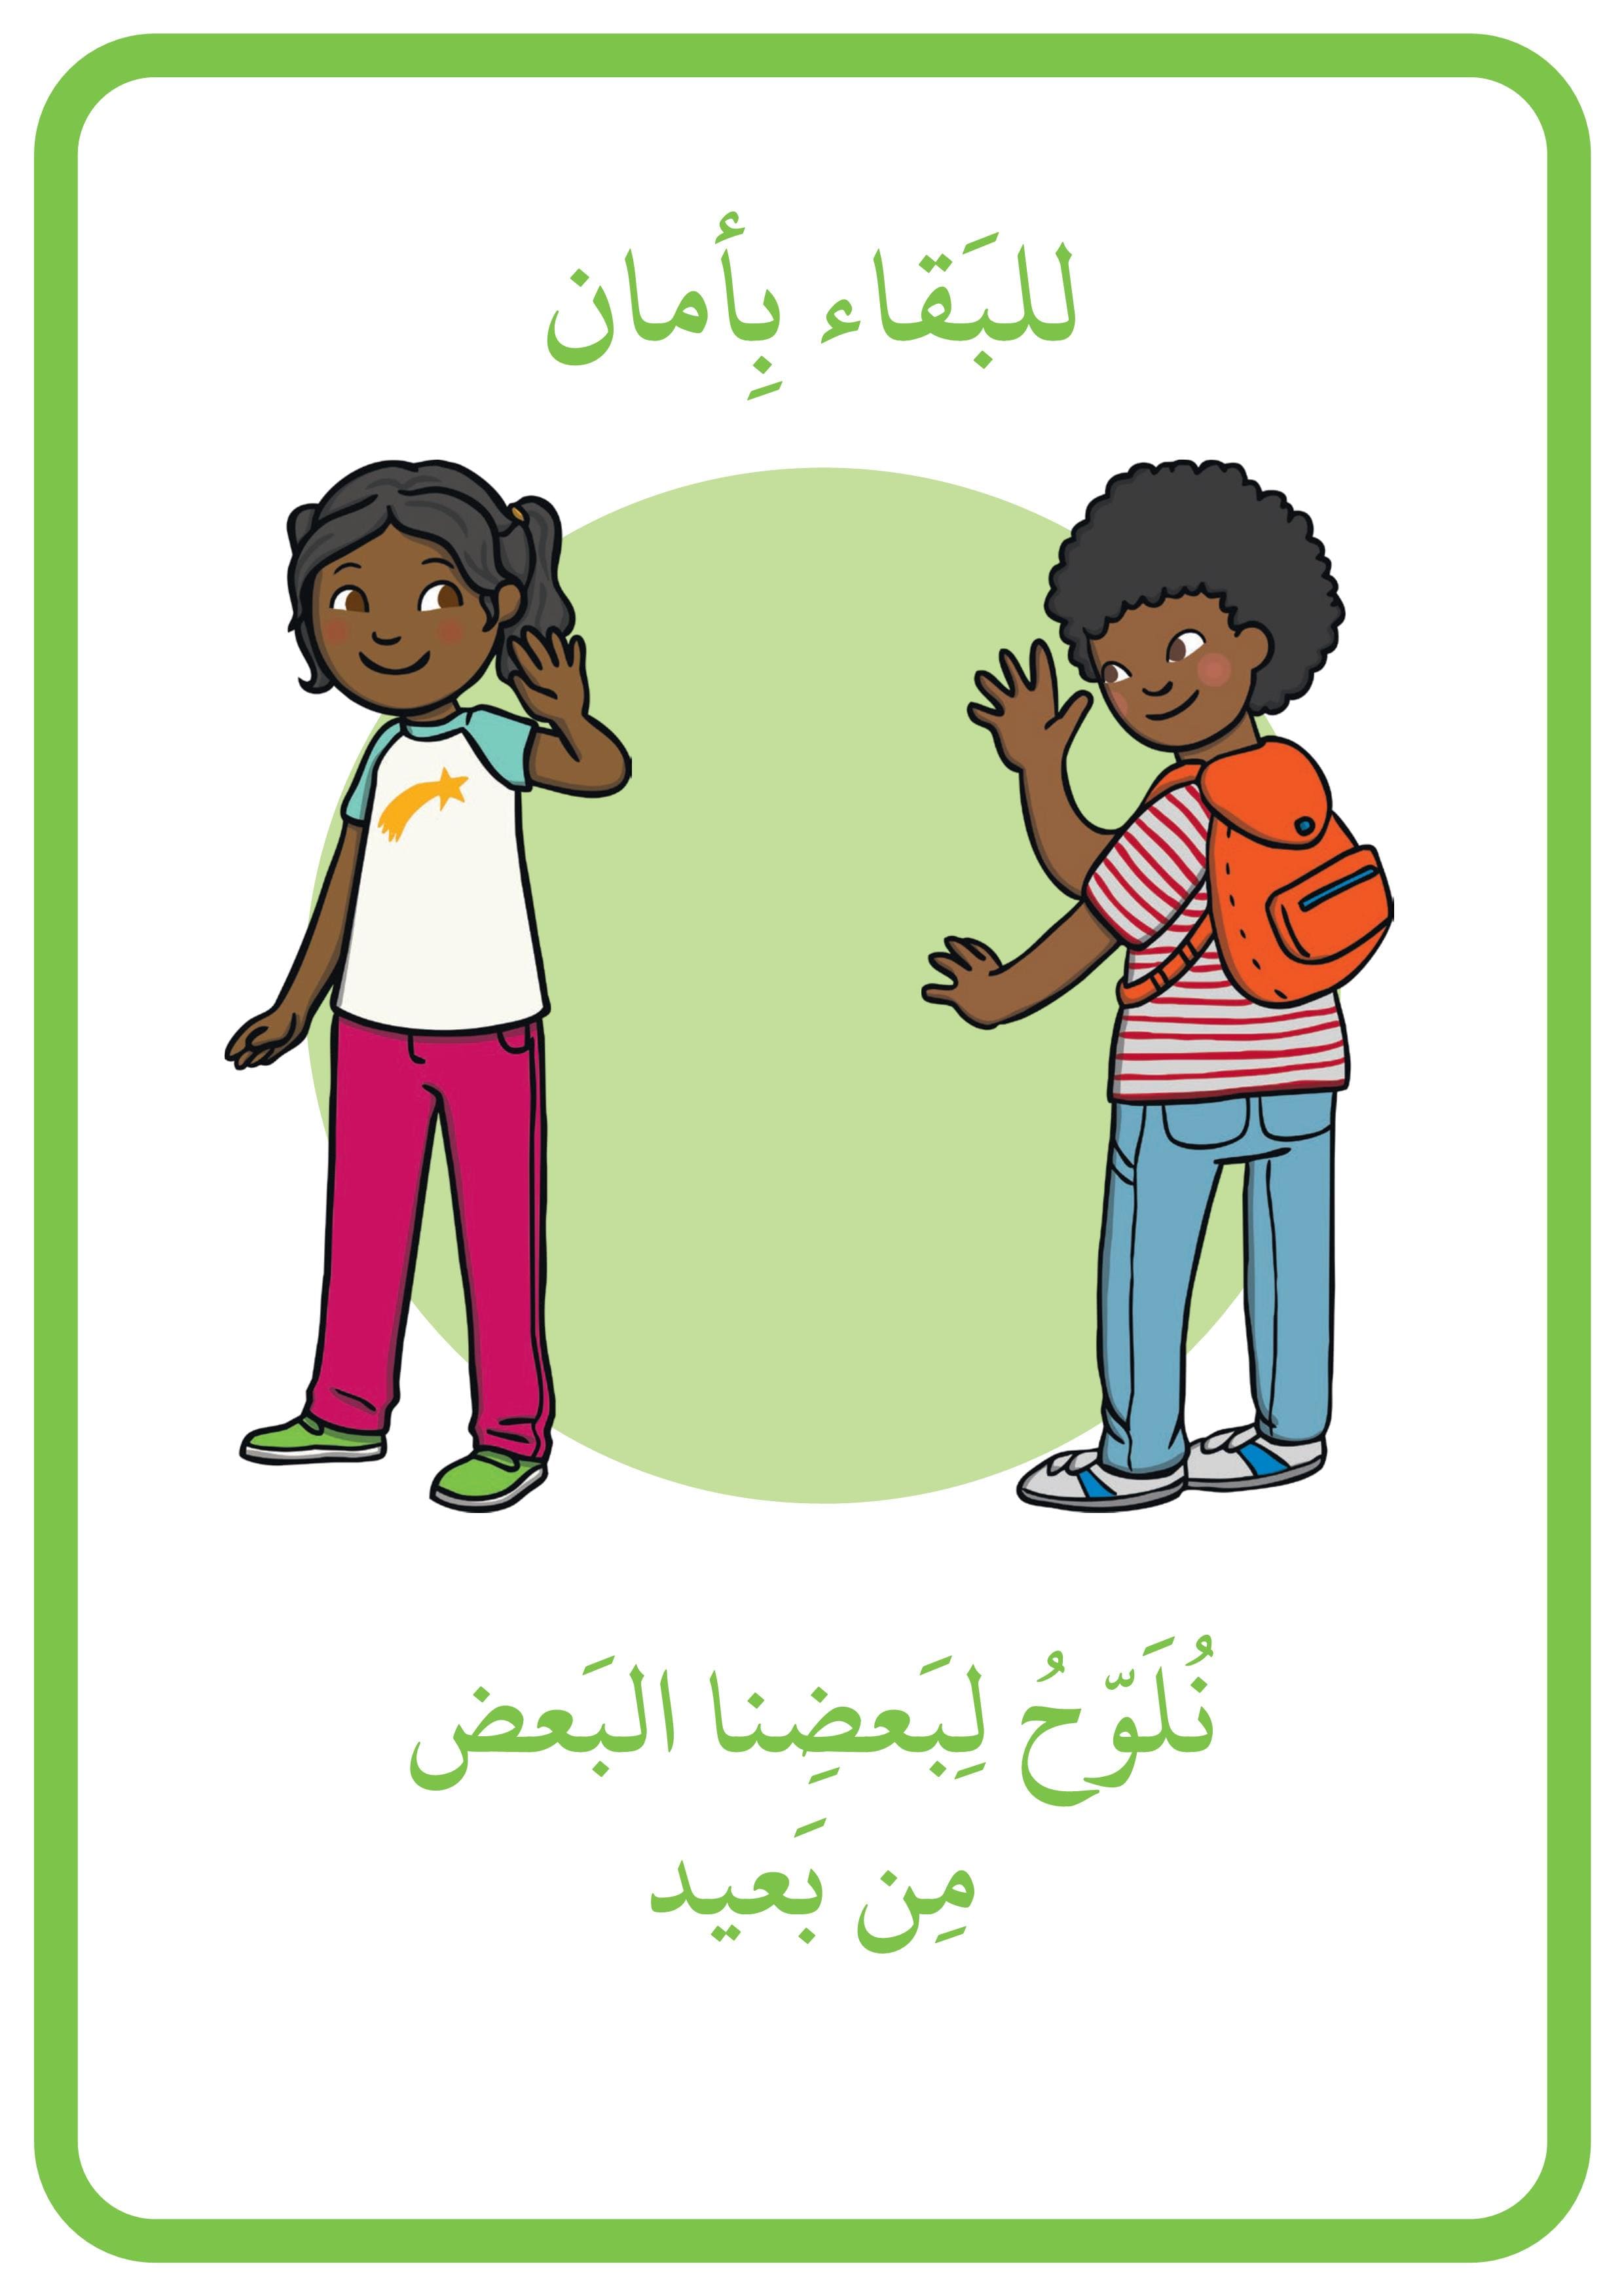 ملصقات كيفية البقاء بأمان عند العودة للمدرسة للاطفال المعلمة أسماء